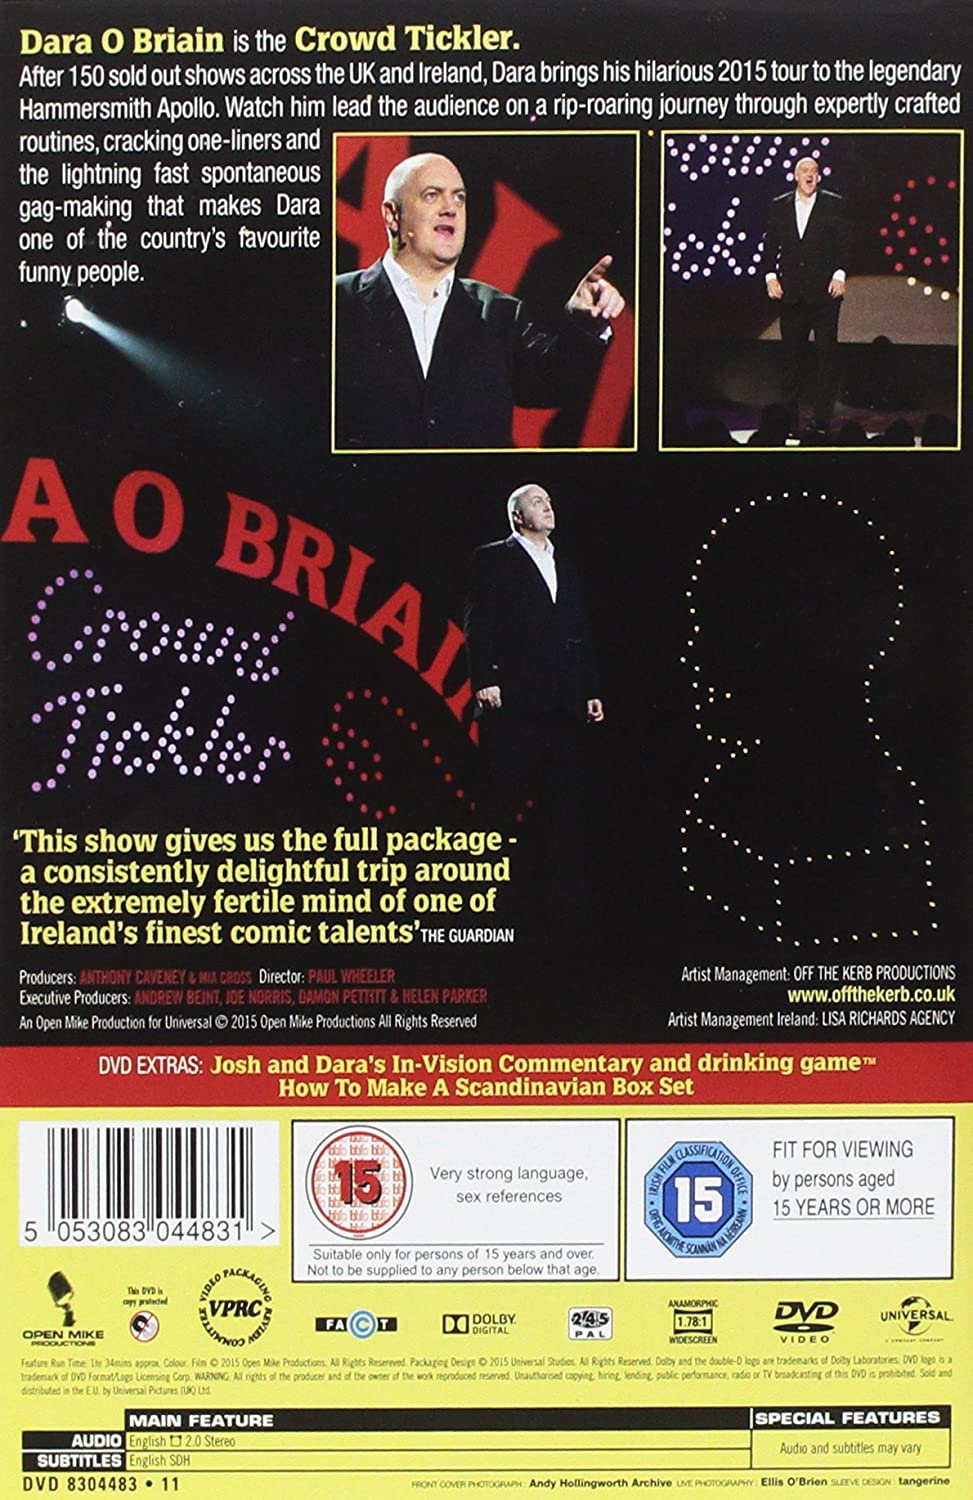 Dara O Briain - Crowd Tickler [2015] - Comedy [DVD]